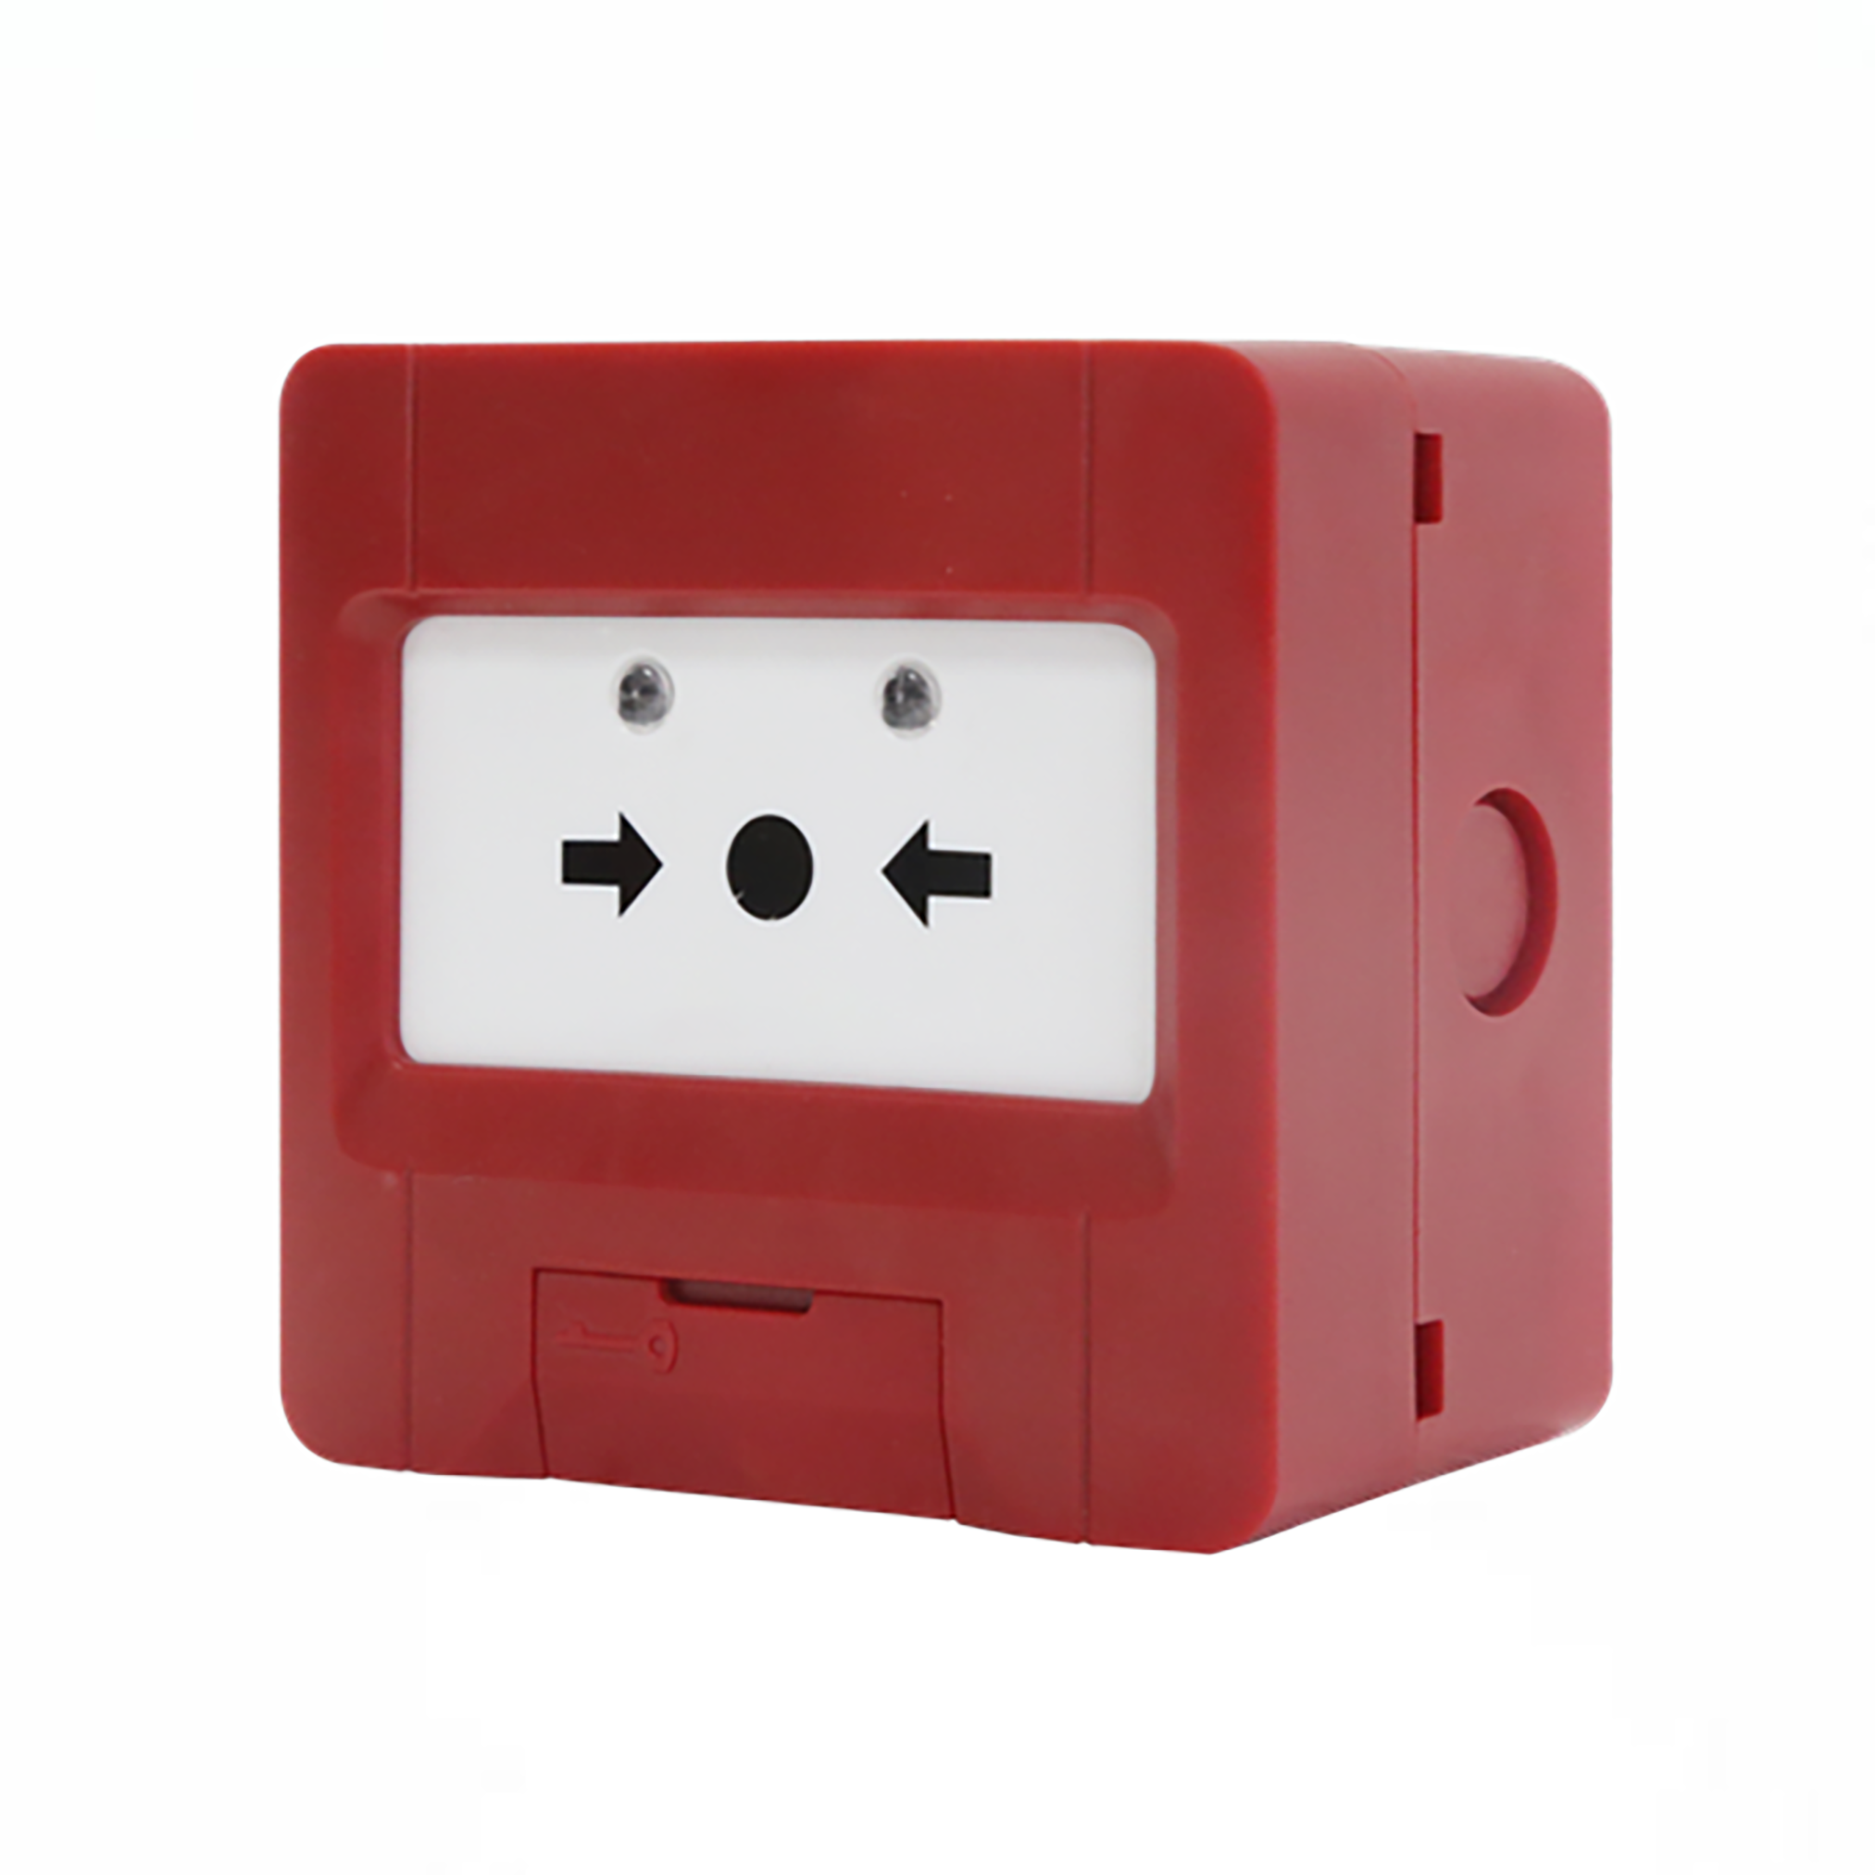 JBF4123A Acesso rápido de emergência: o botão do hidrante permite a ativação conveniente e imediata de hidrantes